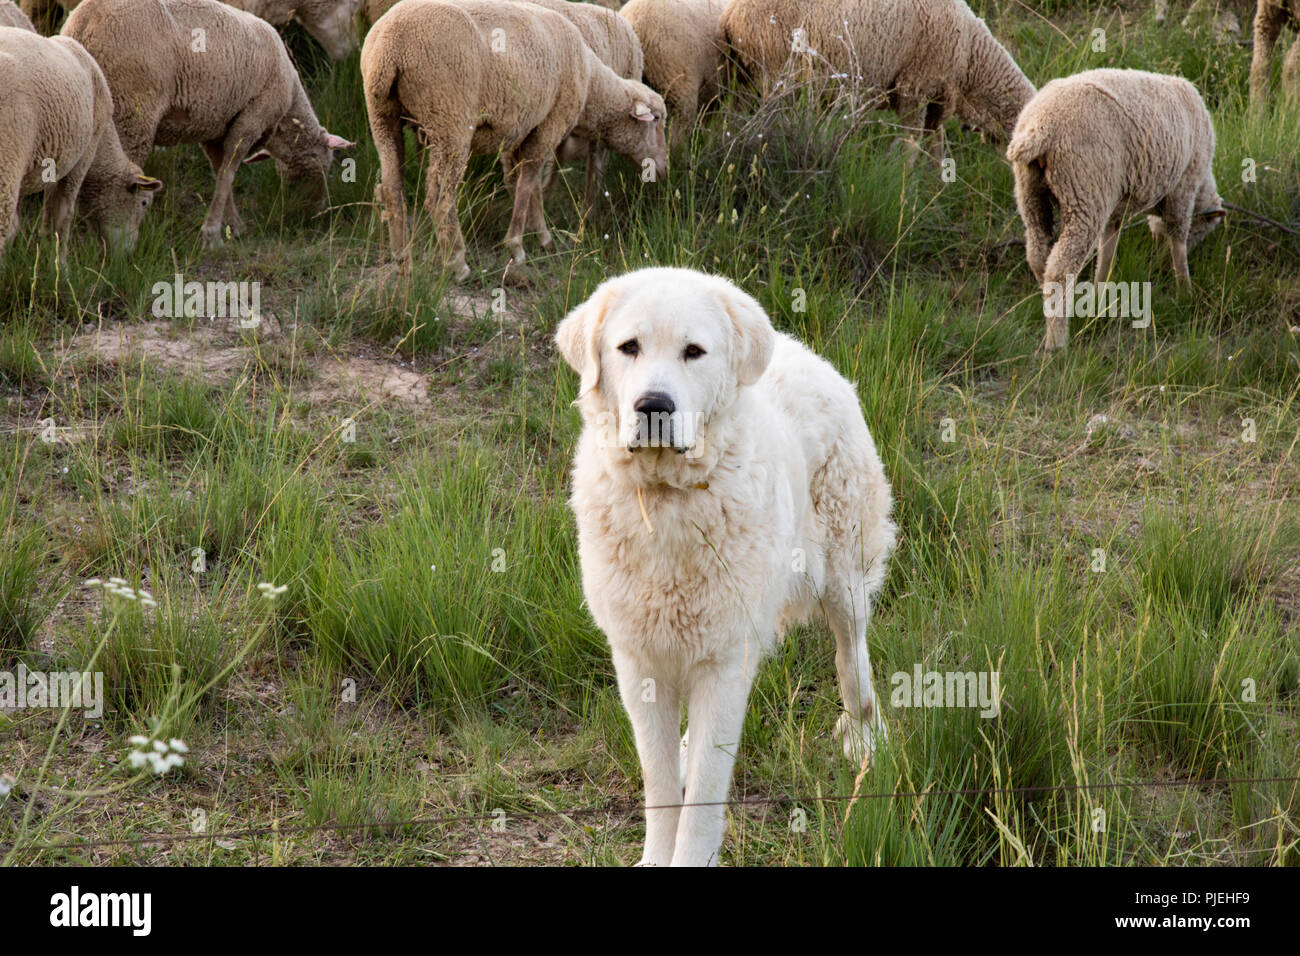 great pyrenees sheep